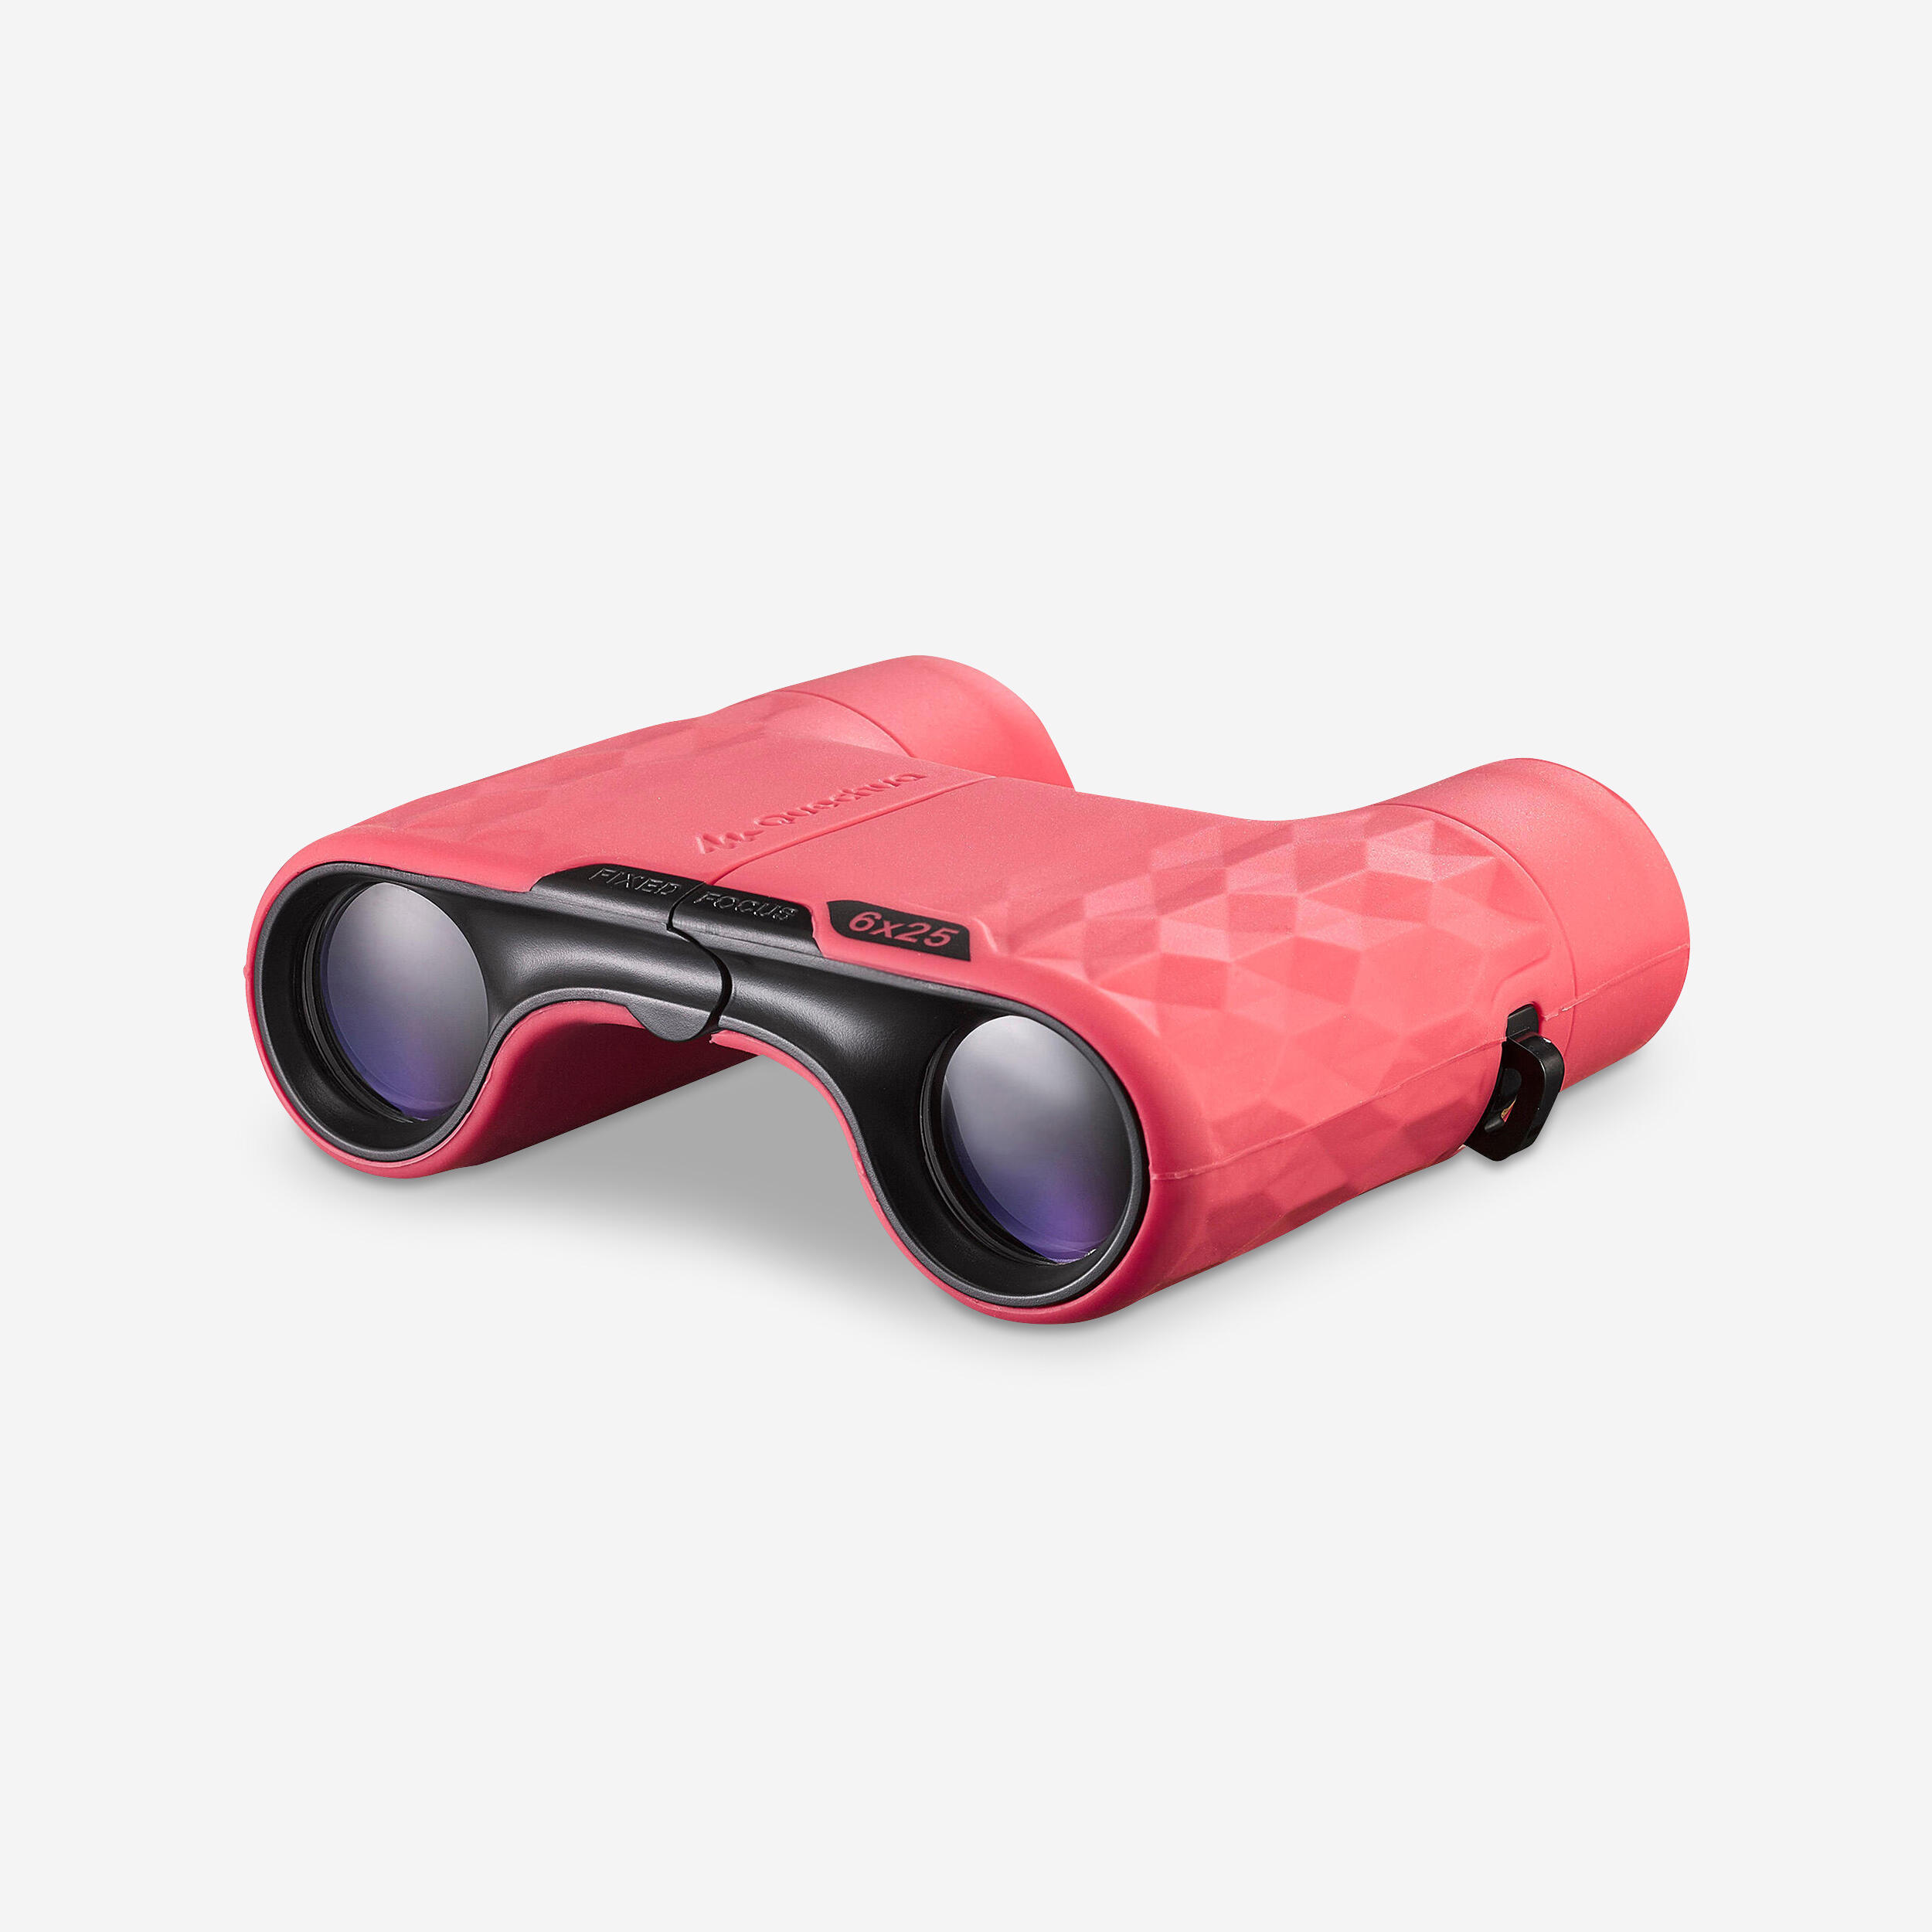 Kids' Hiking Focus-Free Binoculars MH B100 x6 Magnification - pink 1/4